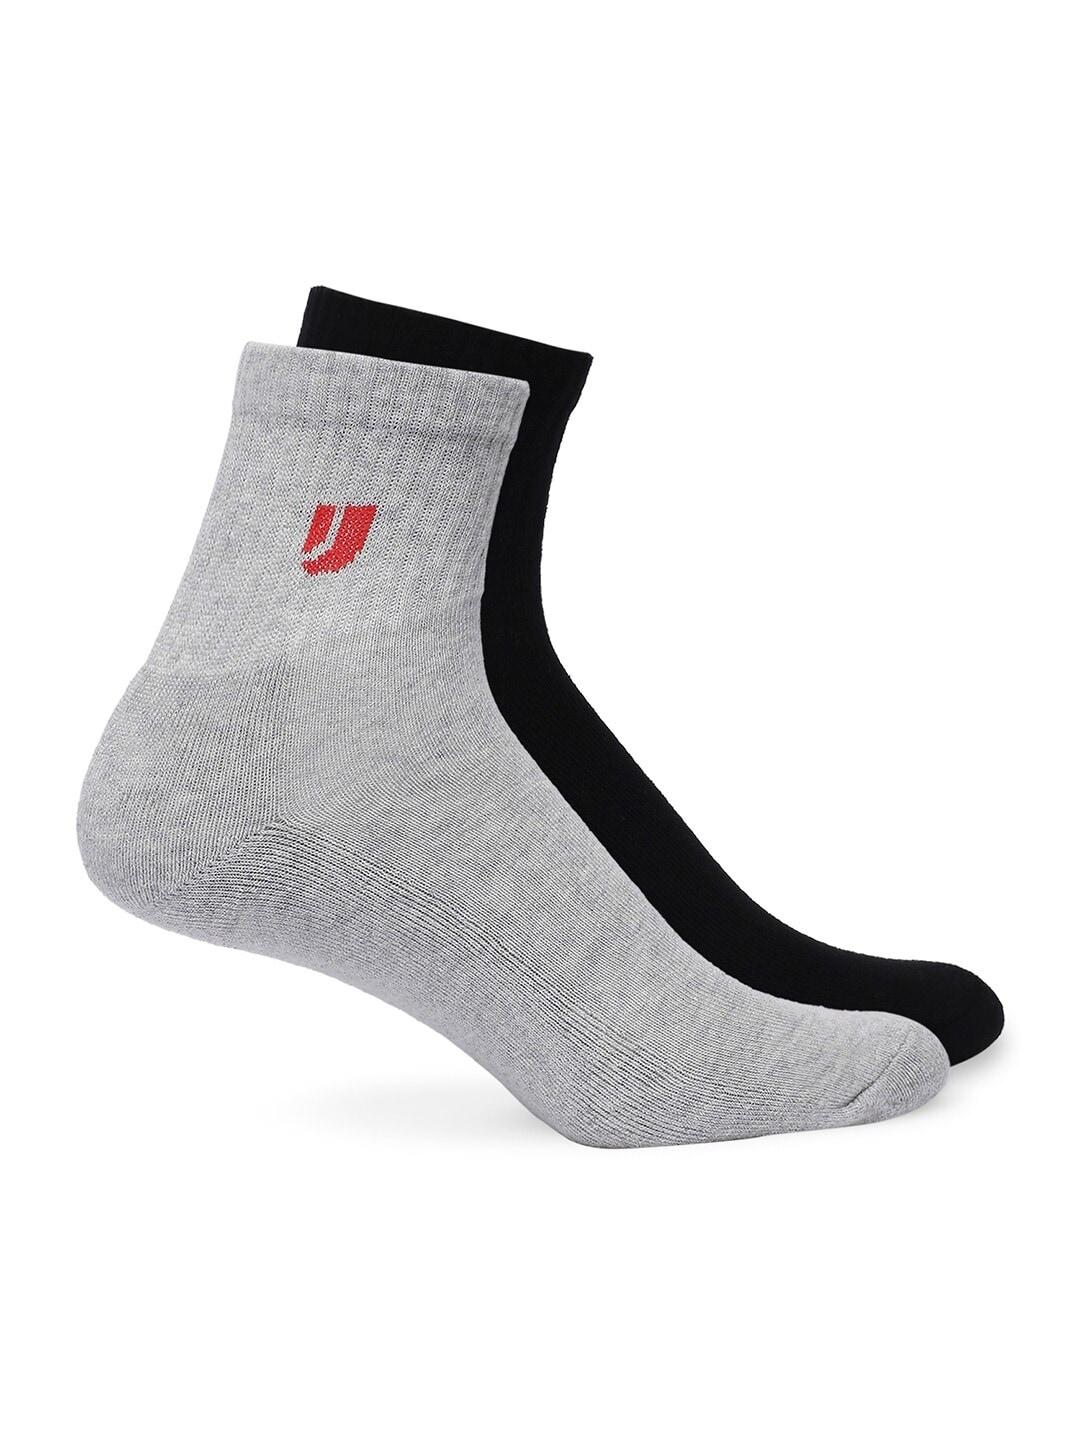 underjeans-by-spykar-men-pack-of-2-ankle-length-socks